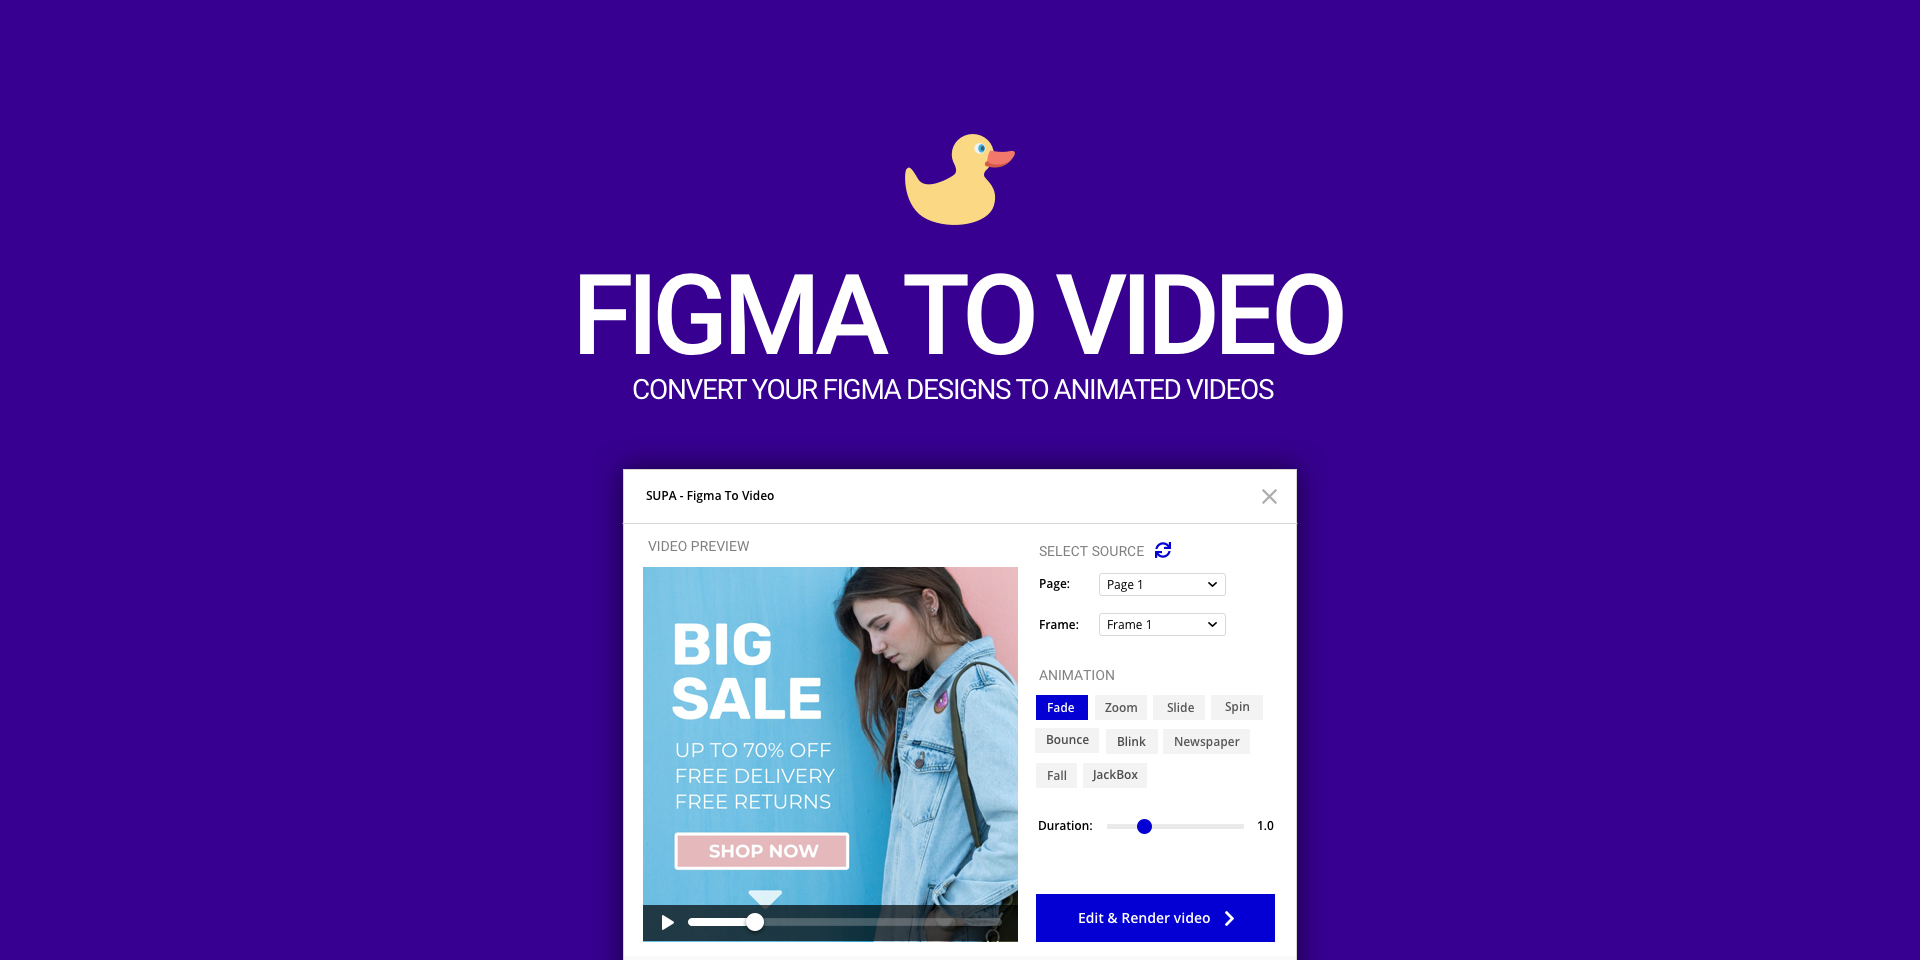 SUPA's Figma to Video plugin